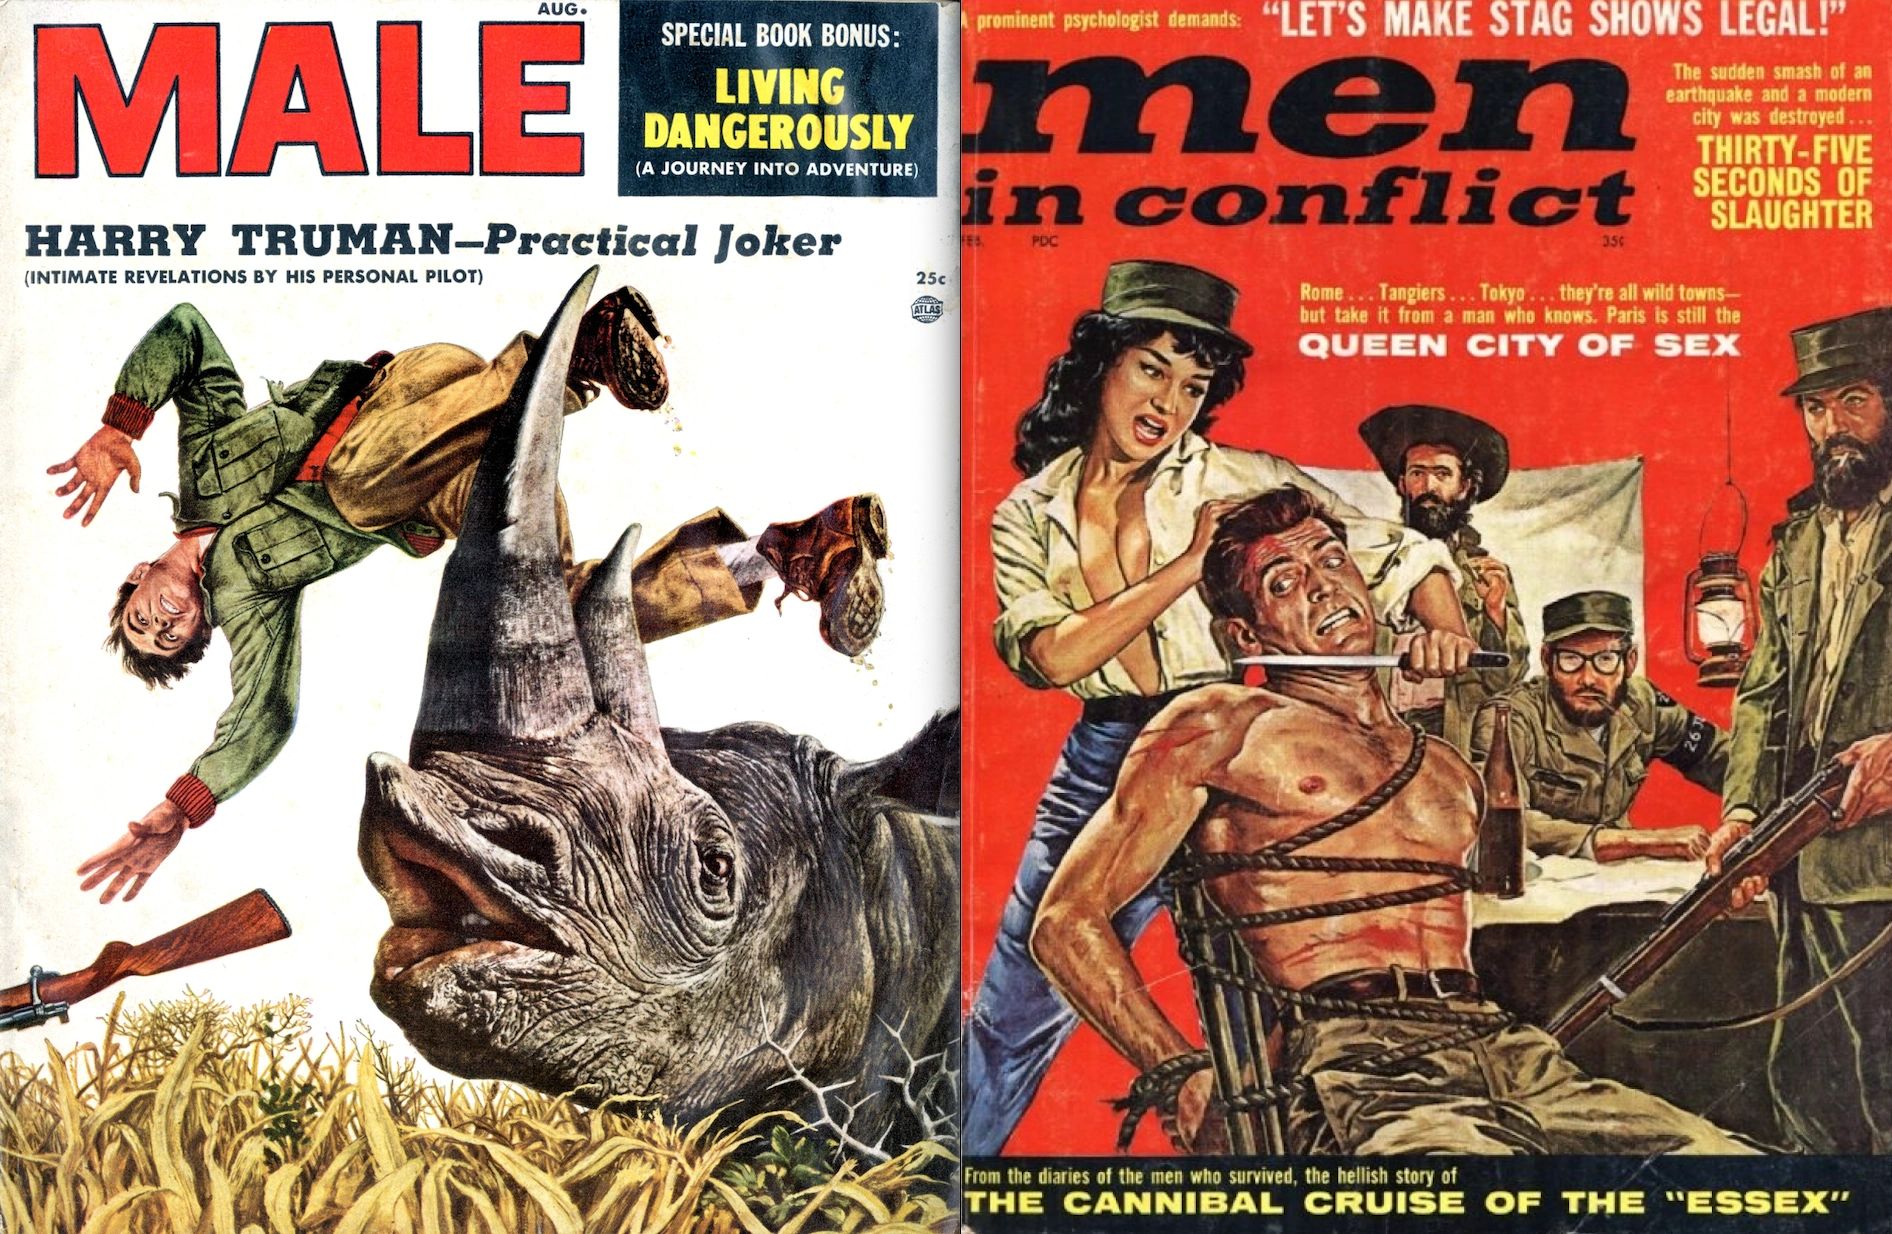 Men's Adventure Magazines